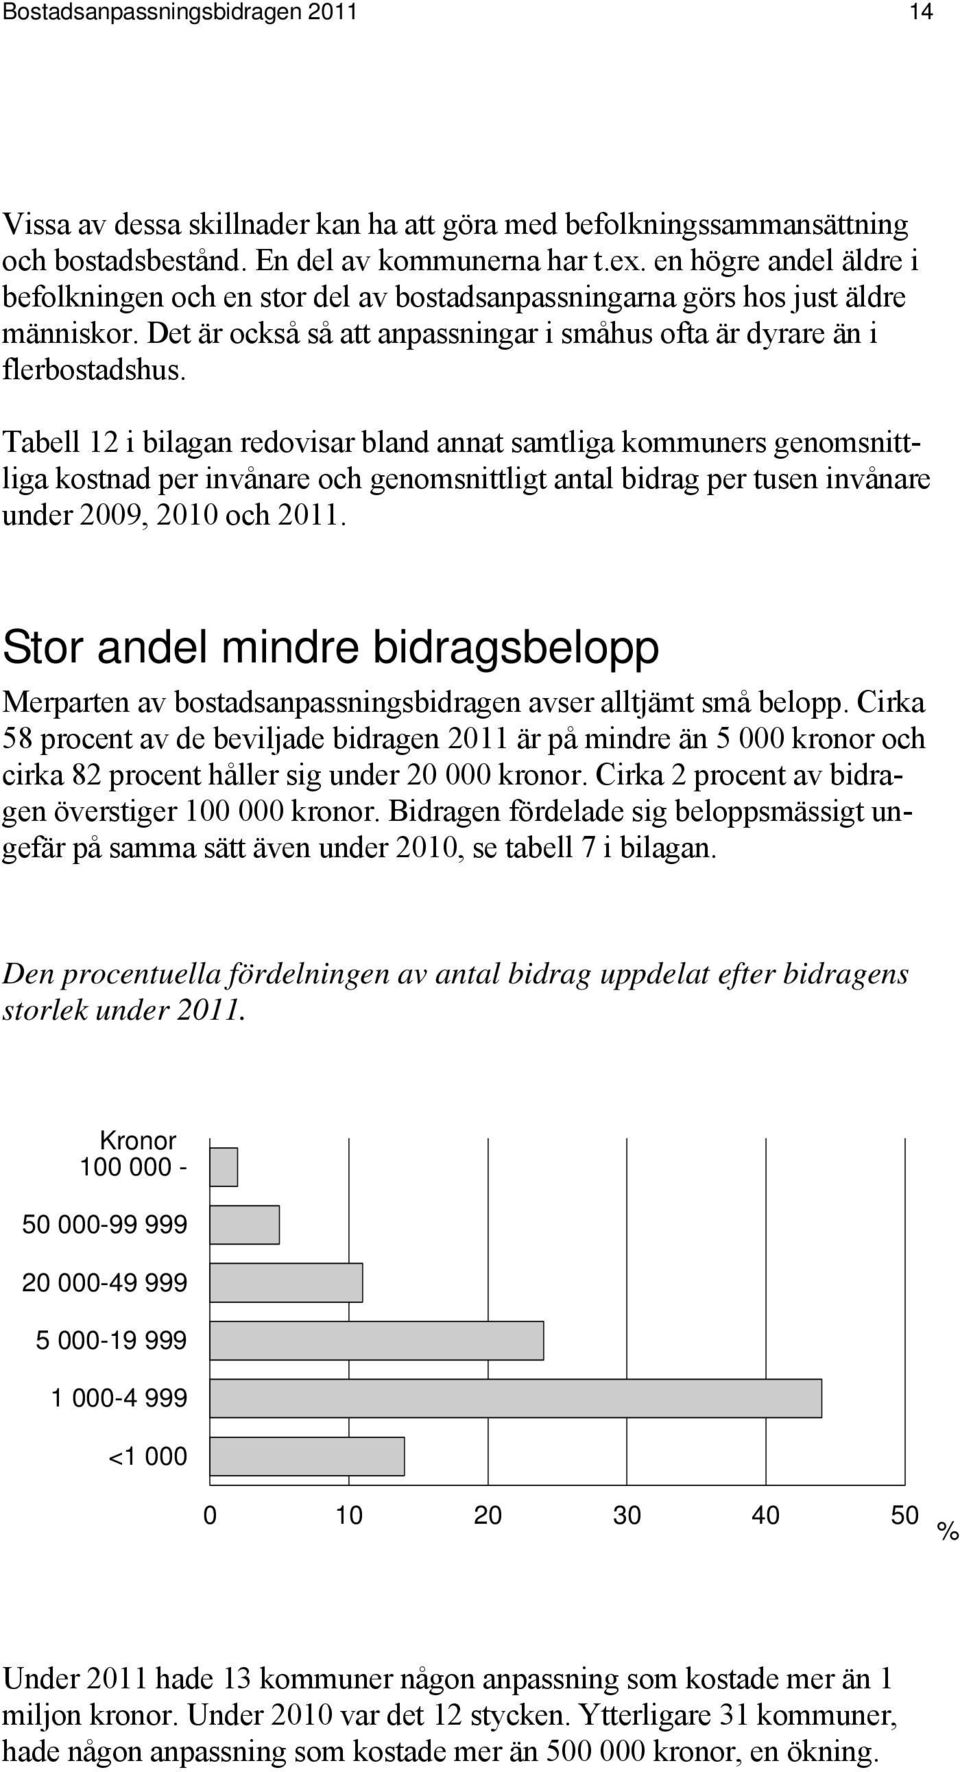 Tabell 12 i bilagan redovisar bland annat samtliga kommuners genomsnittliga kostnad per invånare och genomsnittligt antal bidrag per tusen invånare under 2009, 2010 och 2011.